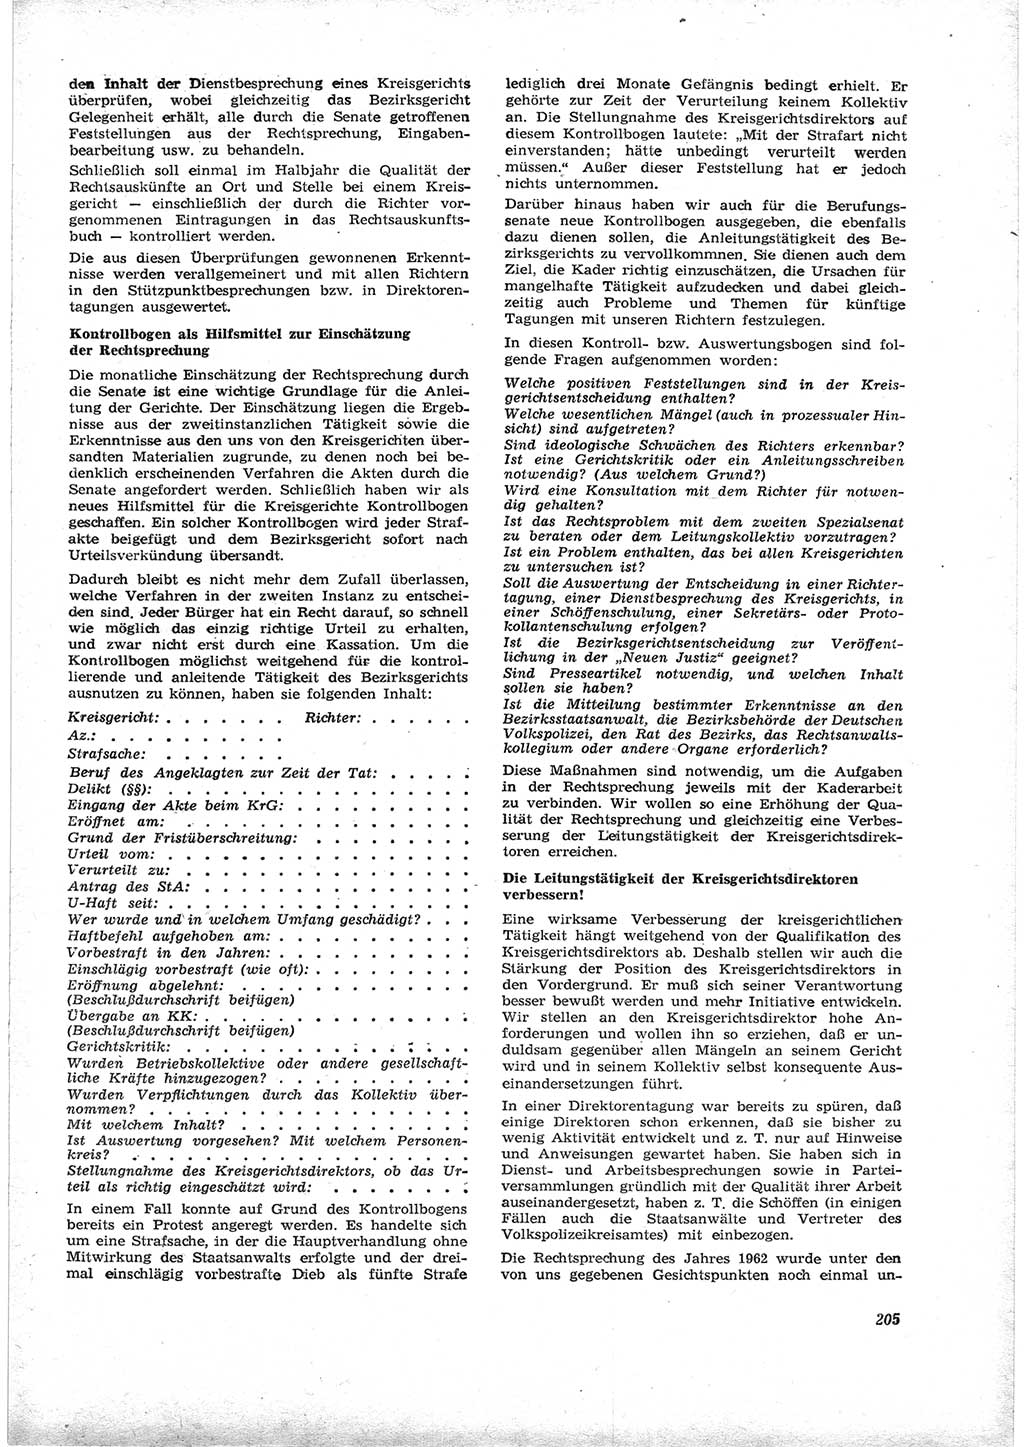 Neue Justiz (NJ), Zeitschrift für Recht und Rechtswissenschaft [Deutsche Demokratische Republik (DDR)], 17. Jahrgang 1963, Seite 205 (NJ DDR 1963, S. 205)